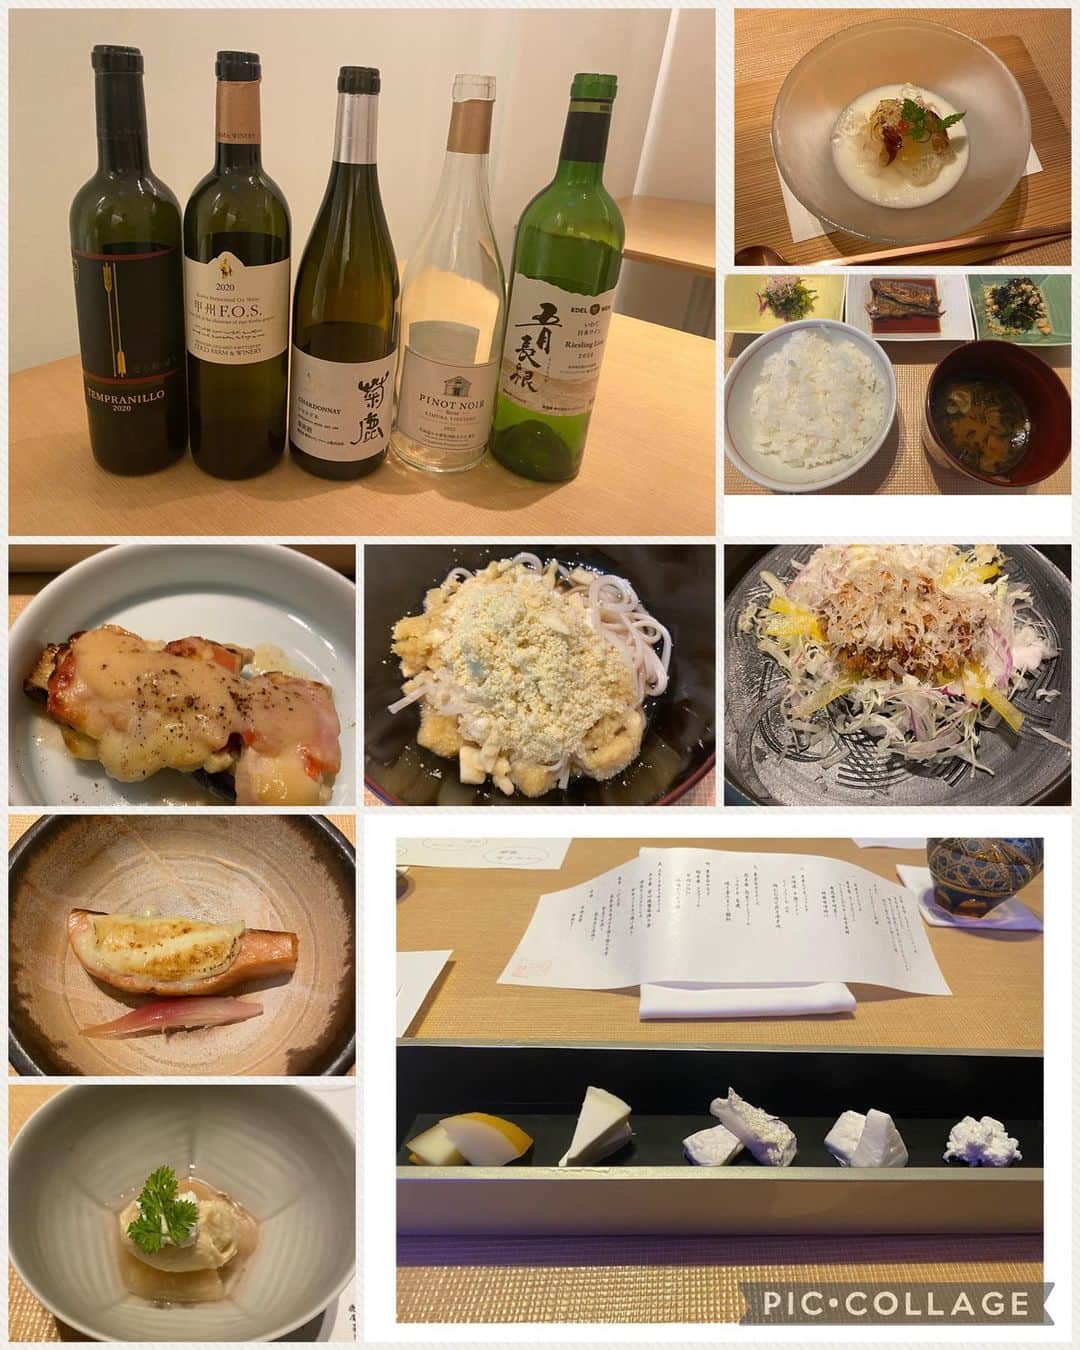 関谷亜矢子のインスタグラム：「日本のチーズ🧀を日本のワイン🍷と そして日本料理で。 日本の素晴らしい仕事を世界に、という思いが詰まった素敵なイベントに参加してきました。  国産チーズをまずはそのまま味わい、続いて国産ワインに合わせて、さらには、 #丸の内一丁目しち十二侯 店主齋藤さんの素晴らしいお料理で頂く。その三段階がチーズラバーとしては嬉しく。  CHEESE STAND#チーズスタンド のチーズはよく知っているモッツァレラやリコッタだけでなく、 #東京白カビチーズや #東京白やなぎ なども、ホロッと優しく美味しくて。  北海道から大分まで、選び抜かれた国産ワインにも改めて感服。こんなに美味しく、バリエーション豊富で。個人的には、#熊本ワインファーム のシャルドネ#菊鹿 に感激。  お料理がまた、創意工夫の賜物で味わい深く。一番会場を沸かせていたのが、「焼き栗のまぶし饂飩」焼き栗を粉状に砕いたものと白カビチーズをよく出汁のきいた冷たい稲庭うどんに合わせて。 栗の香ばしさとミルキーなチーズがよく合って、発想の斬新さに舌を巻きました。  CHEESE STANDの柳平孝二さんのVTRを交えながらのお話からは、東京の牧場のミルクを使って朝3時から始まるチーズ作り、尾山台にも新しい店舗と、ますます意欲的な情熱が伝わってきて、 #チーズプロフェッショナル協会 会長坂上あきさんのお話と共に、国産チーズのこれからにますます期待がふくらみました。  #東京食文化創研舎 での活動で繋がった4人の方々が発起人となったこのイベント。今回はまずはスタートの0回ということ。第1回の開催が今から楽しみです♪ 370あるといわれる日本のチーズ工房、「あと369回できますね！」 というゲストの感想に激しく同意した夜でした。 (お店の写真を撮り忘れたので、公式サイトの写真をお借りしています)  #国産チーズ #国産ワイン #日本のチーズを日本のワインとそして日本料理で #新しい試み #チーズラバー #チーズを食卓に」